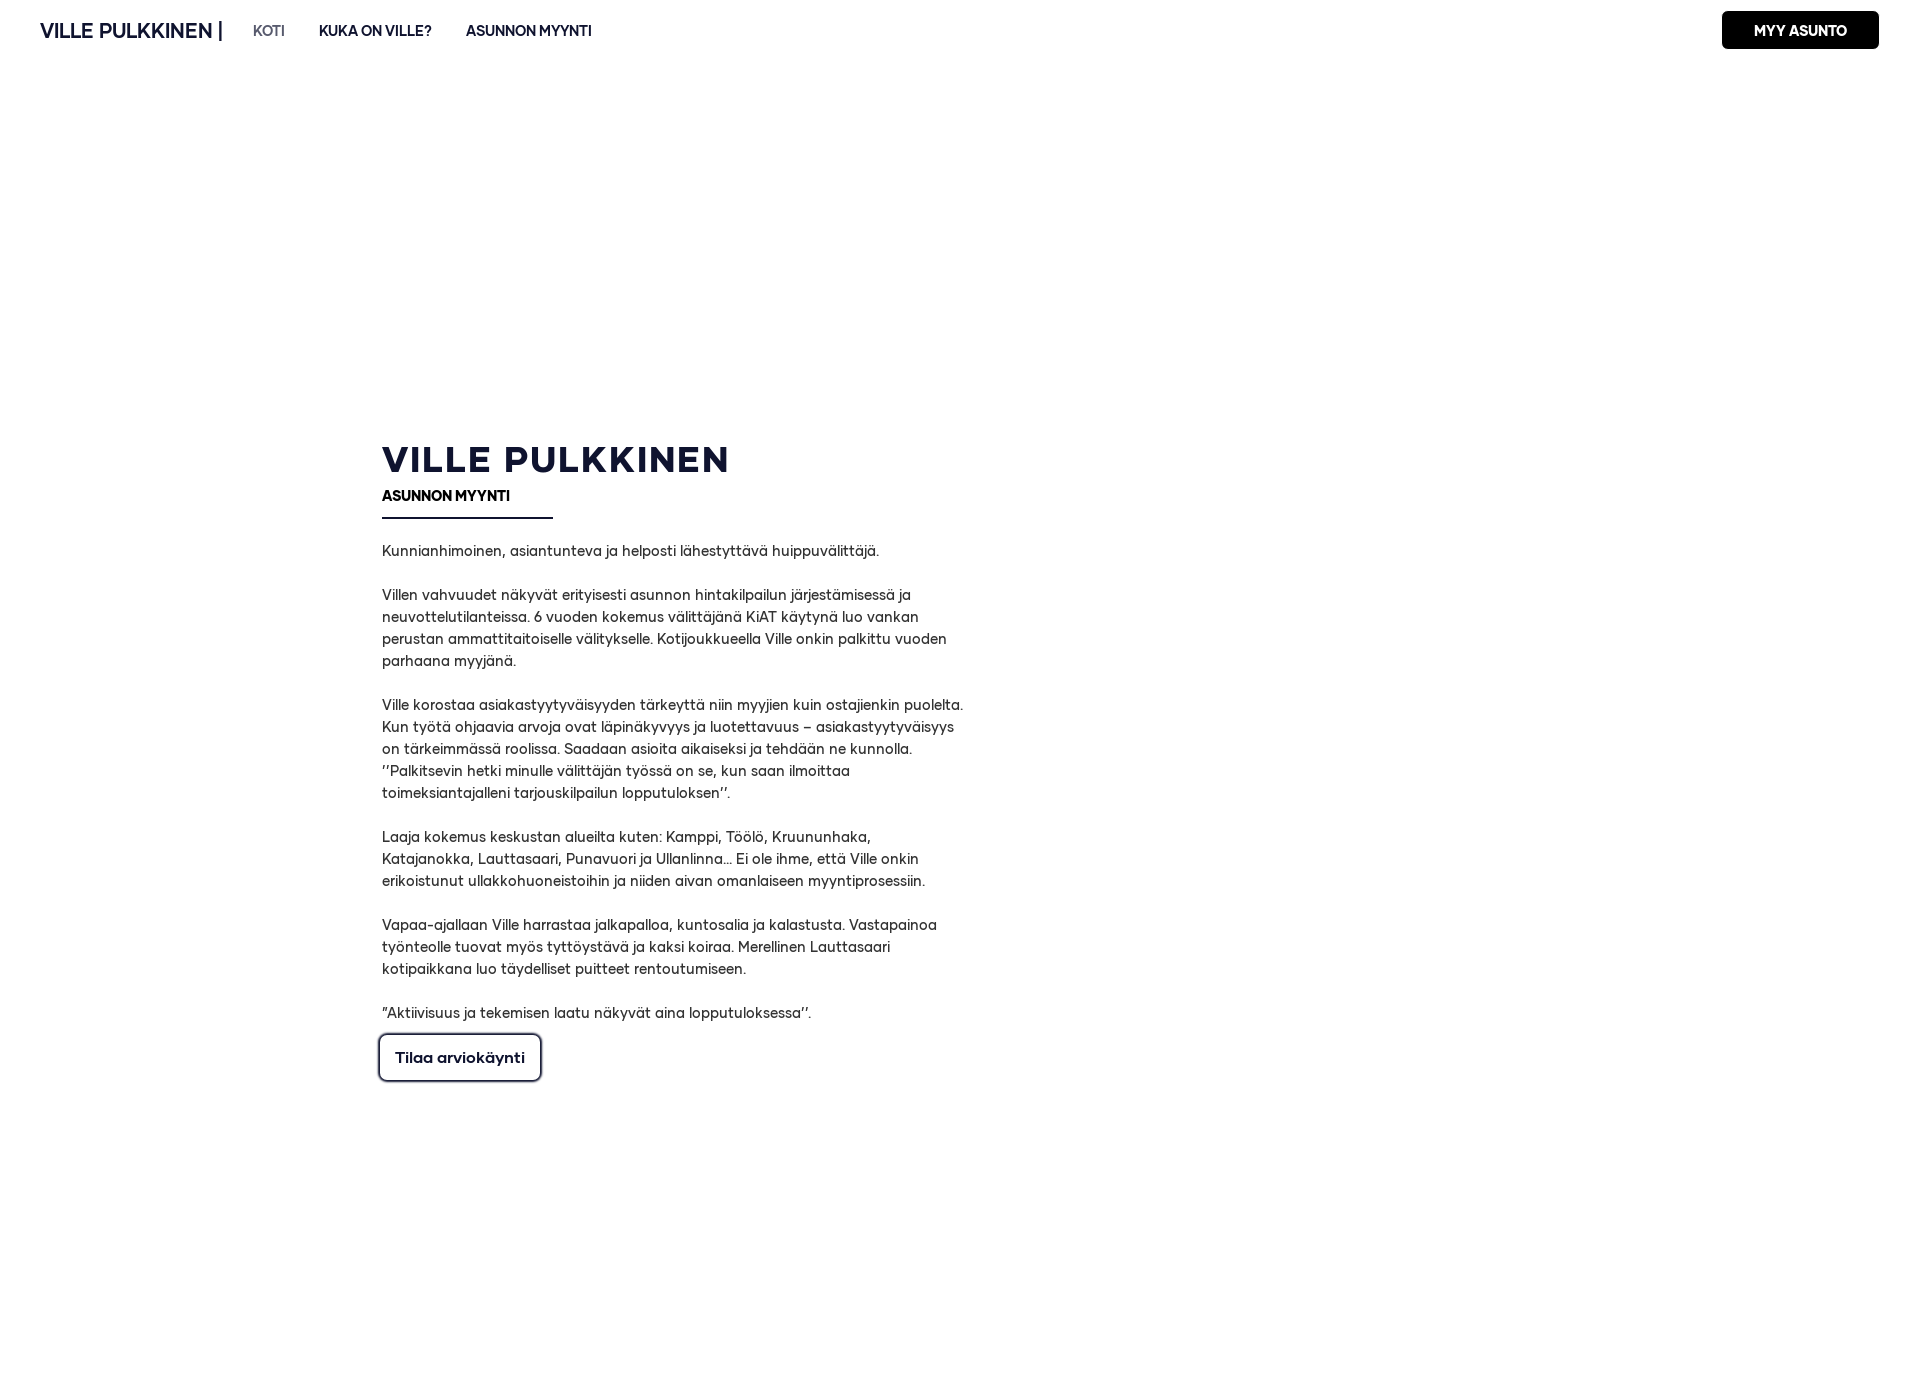 Screenshot for villepulkkinen.fi